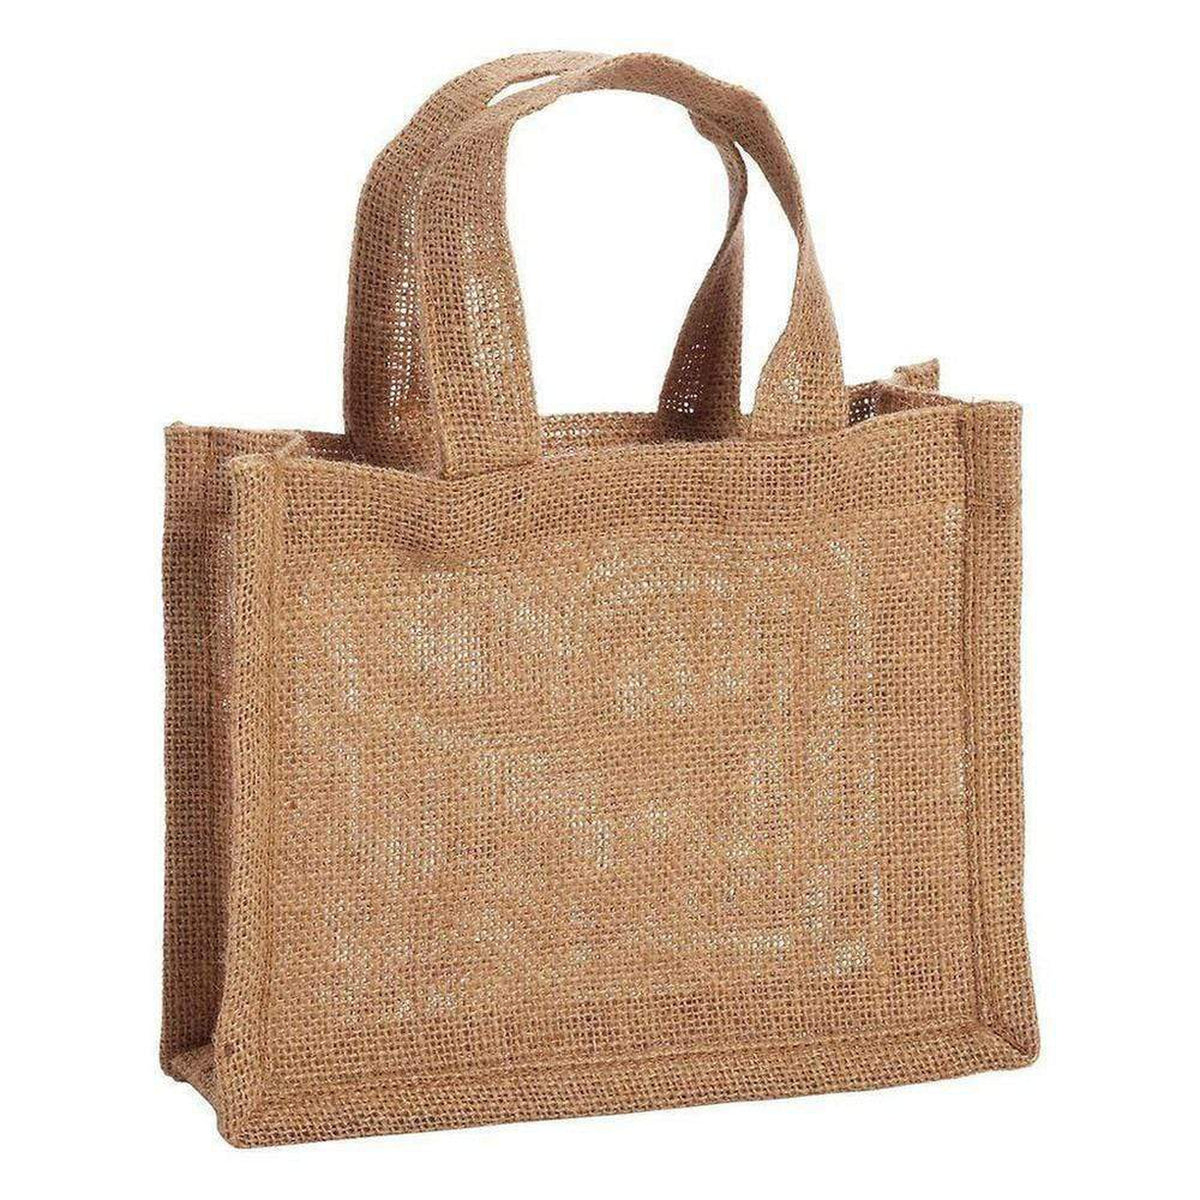 Wholesale Party Favor Bags, Mini Burlap Bags, Gift Bags in Bulk – BagzDepot™